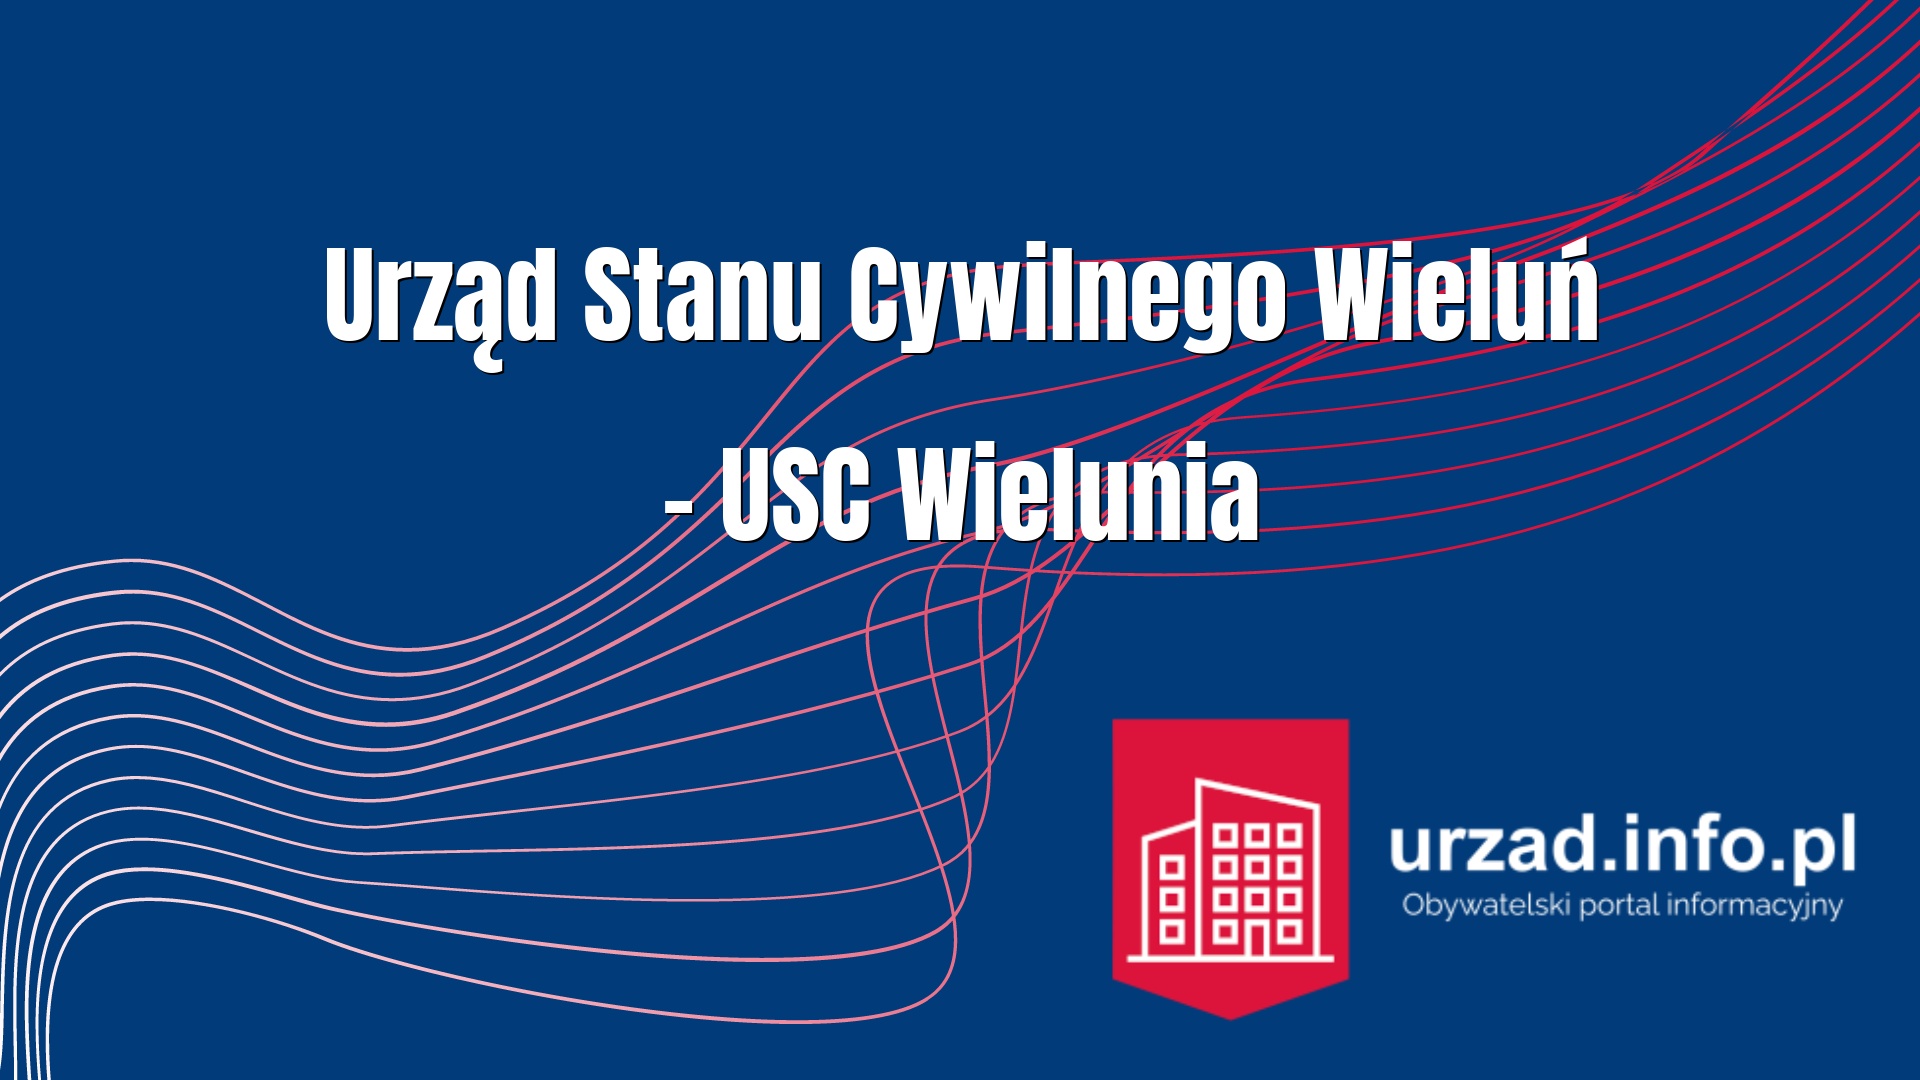 Urząd Stanu Cywilnego Wieluń – USC Wielunia